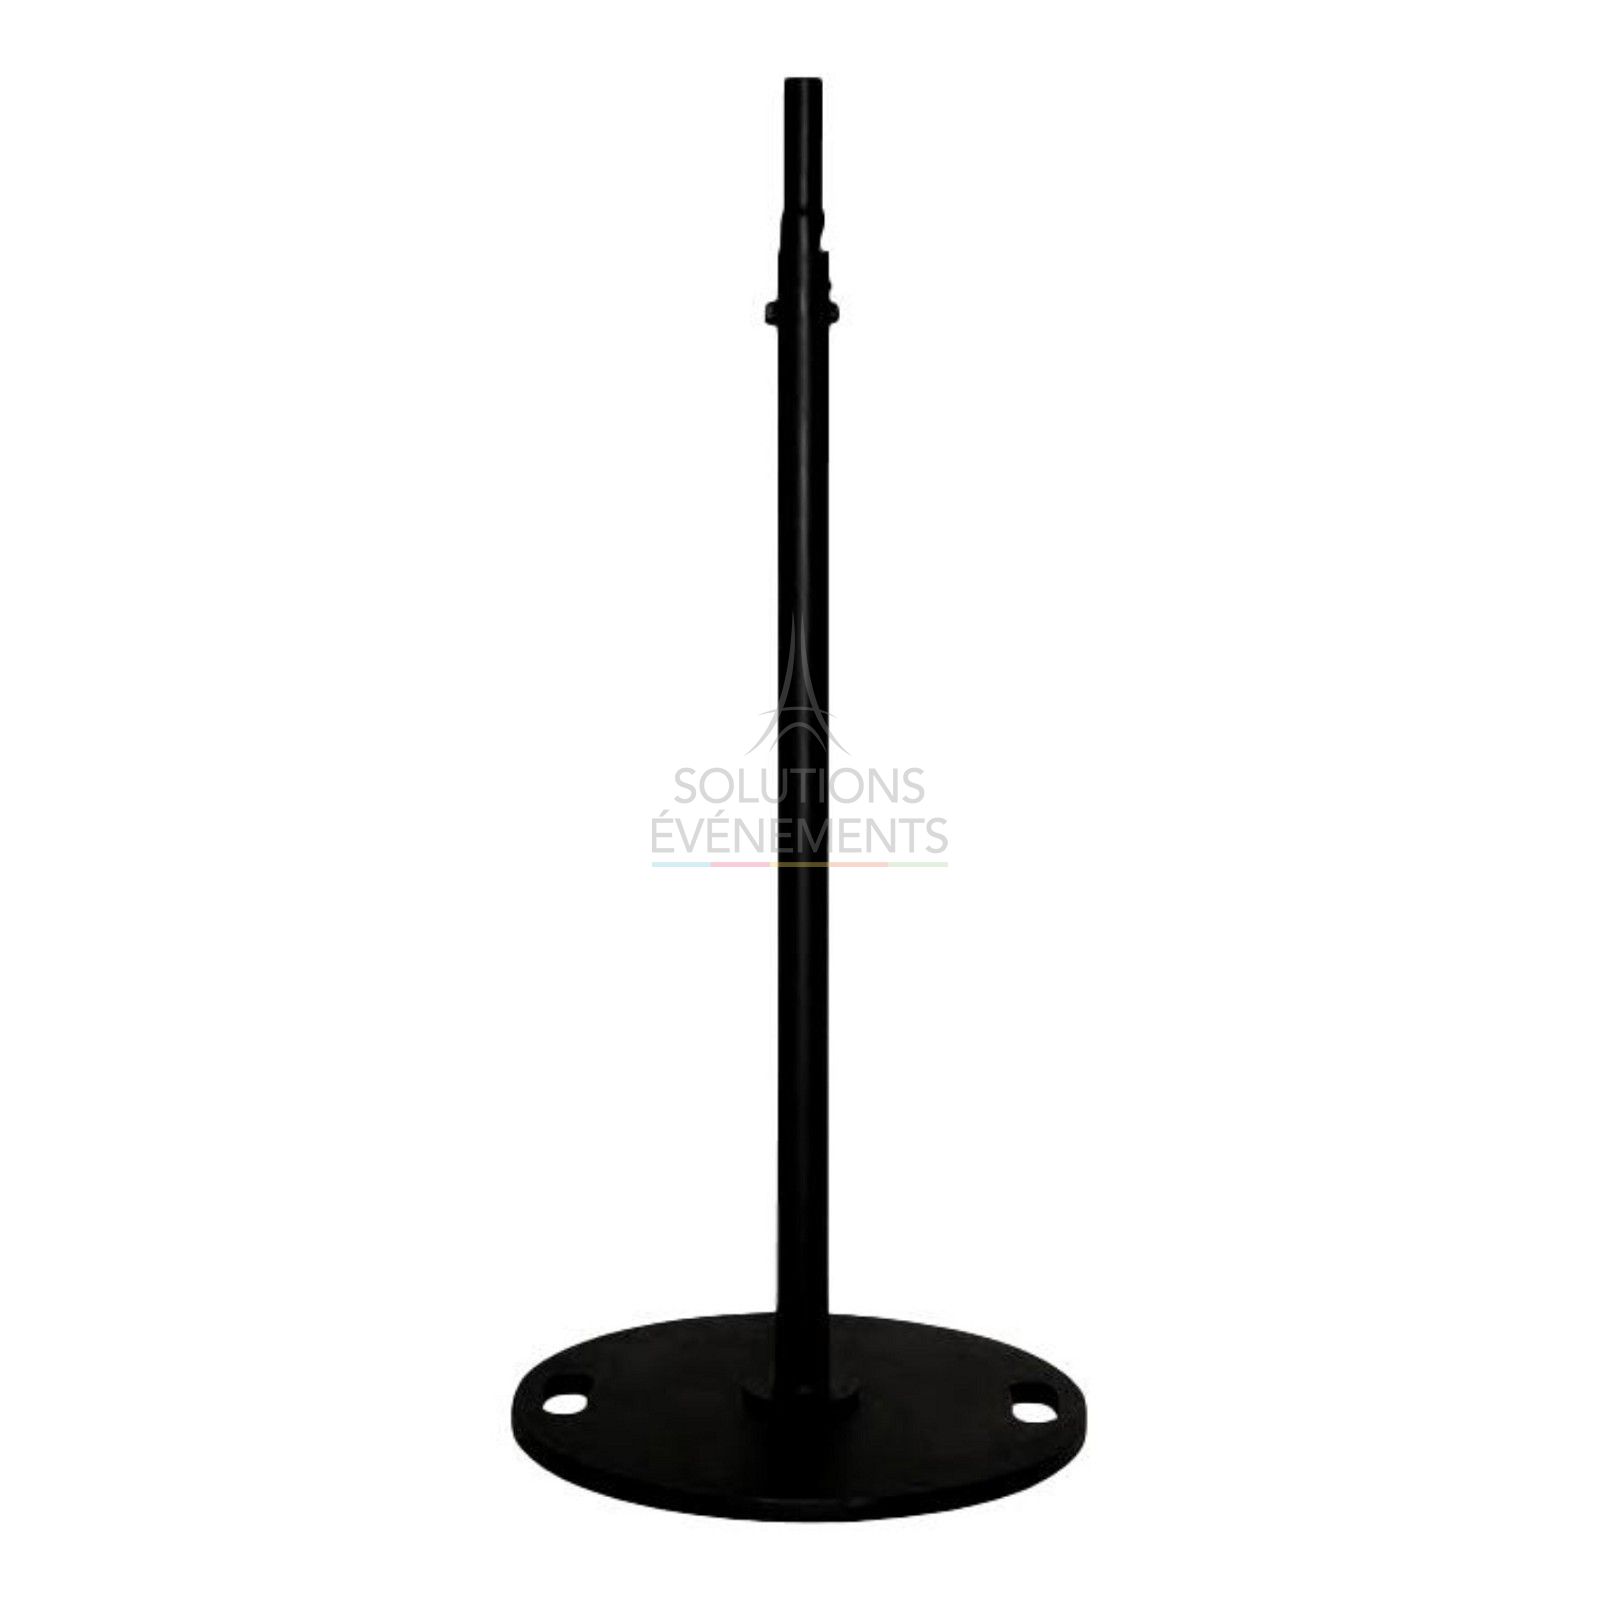 Rental black stand for speaker or projector